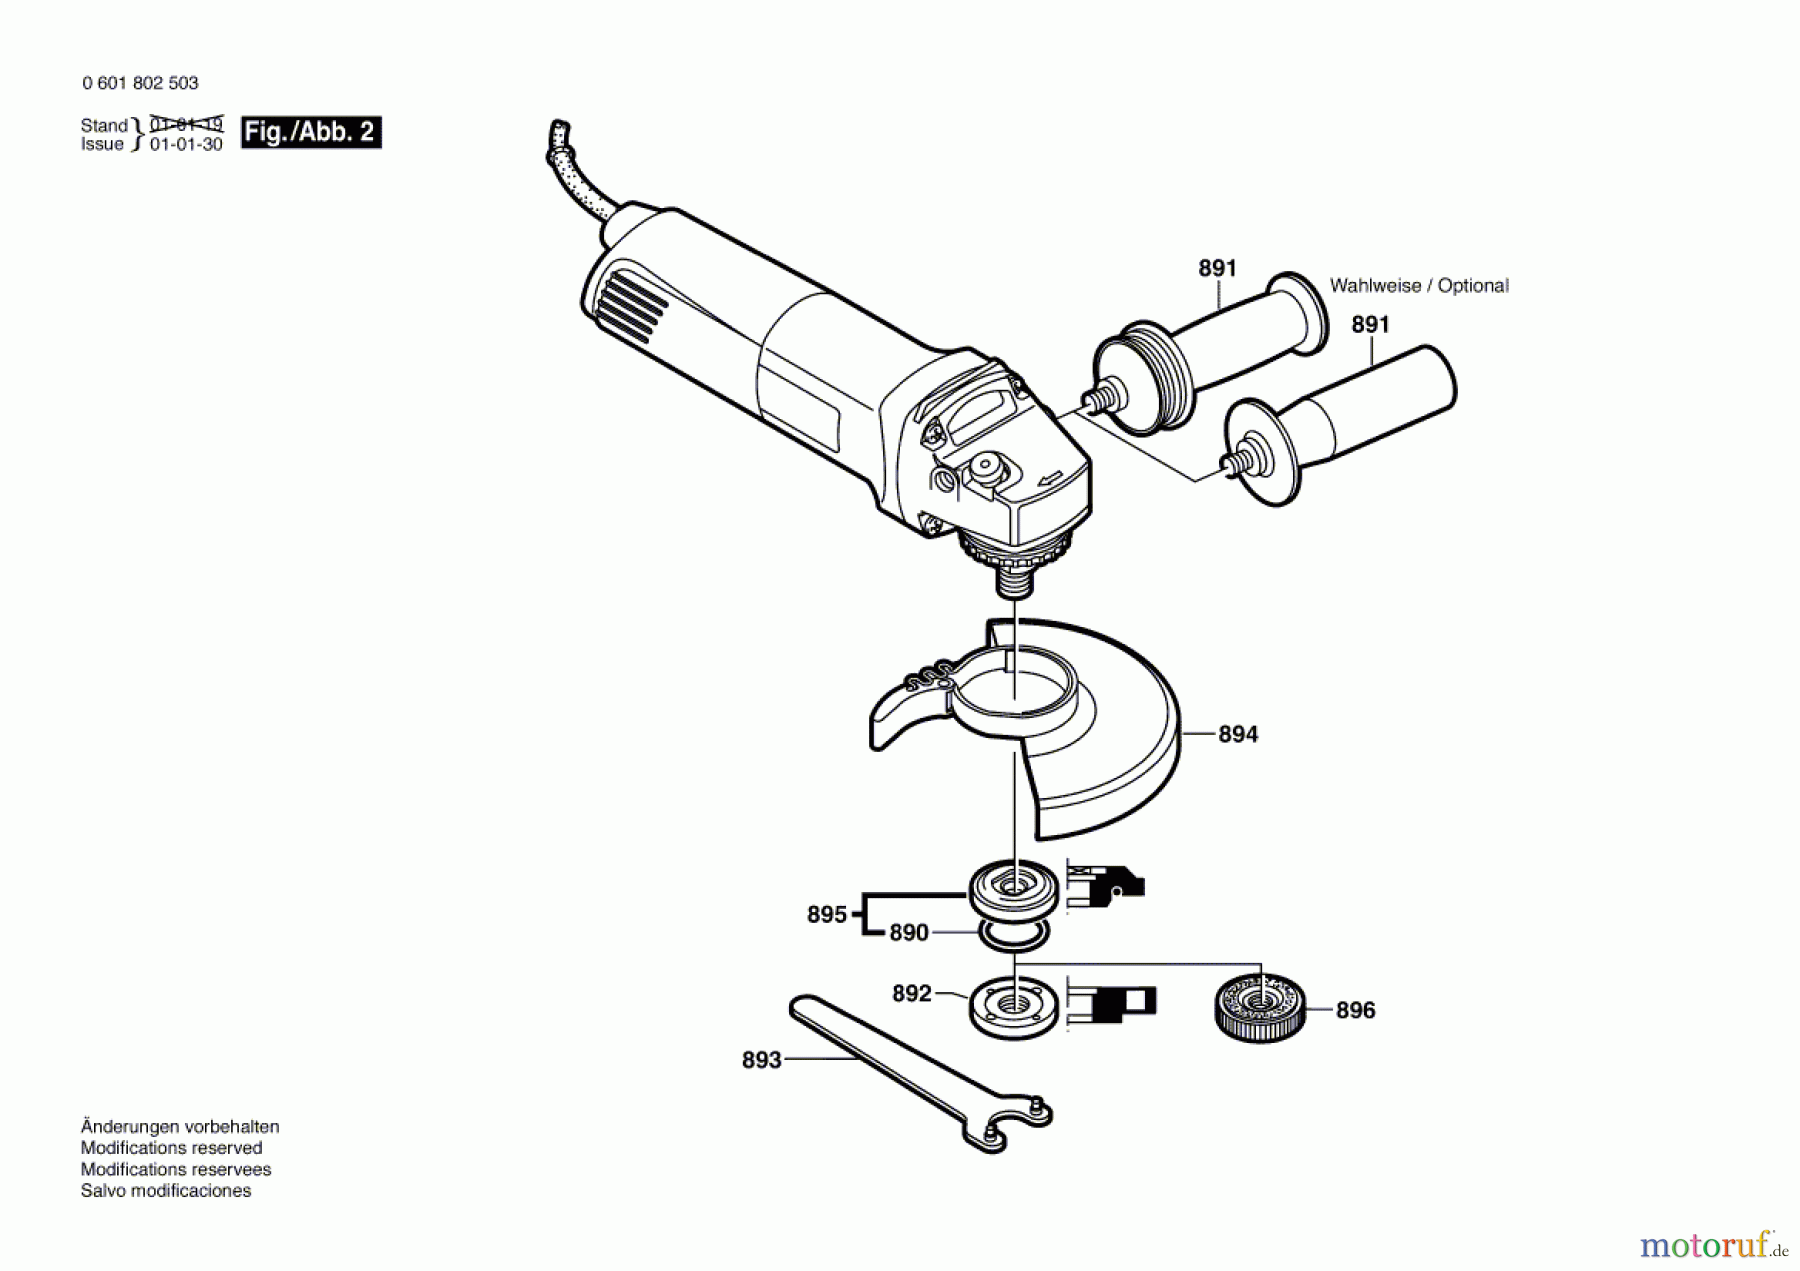  Bosch Werkzeug Winkelschleifer GWS 10-125 C Seite 2